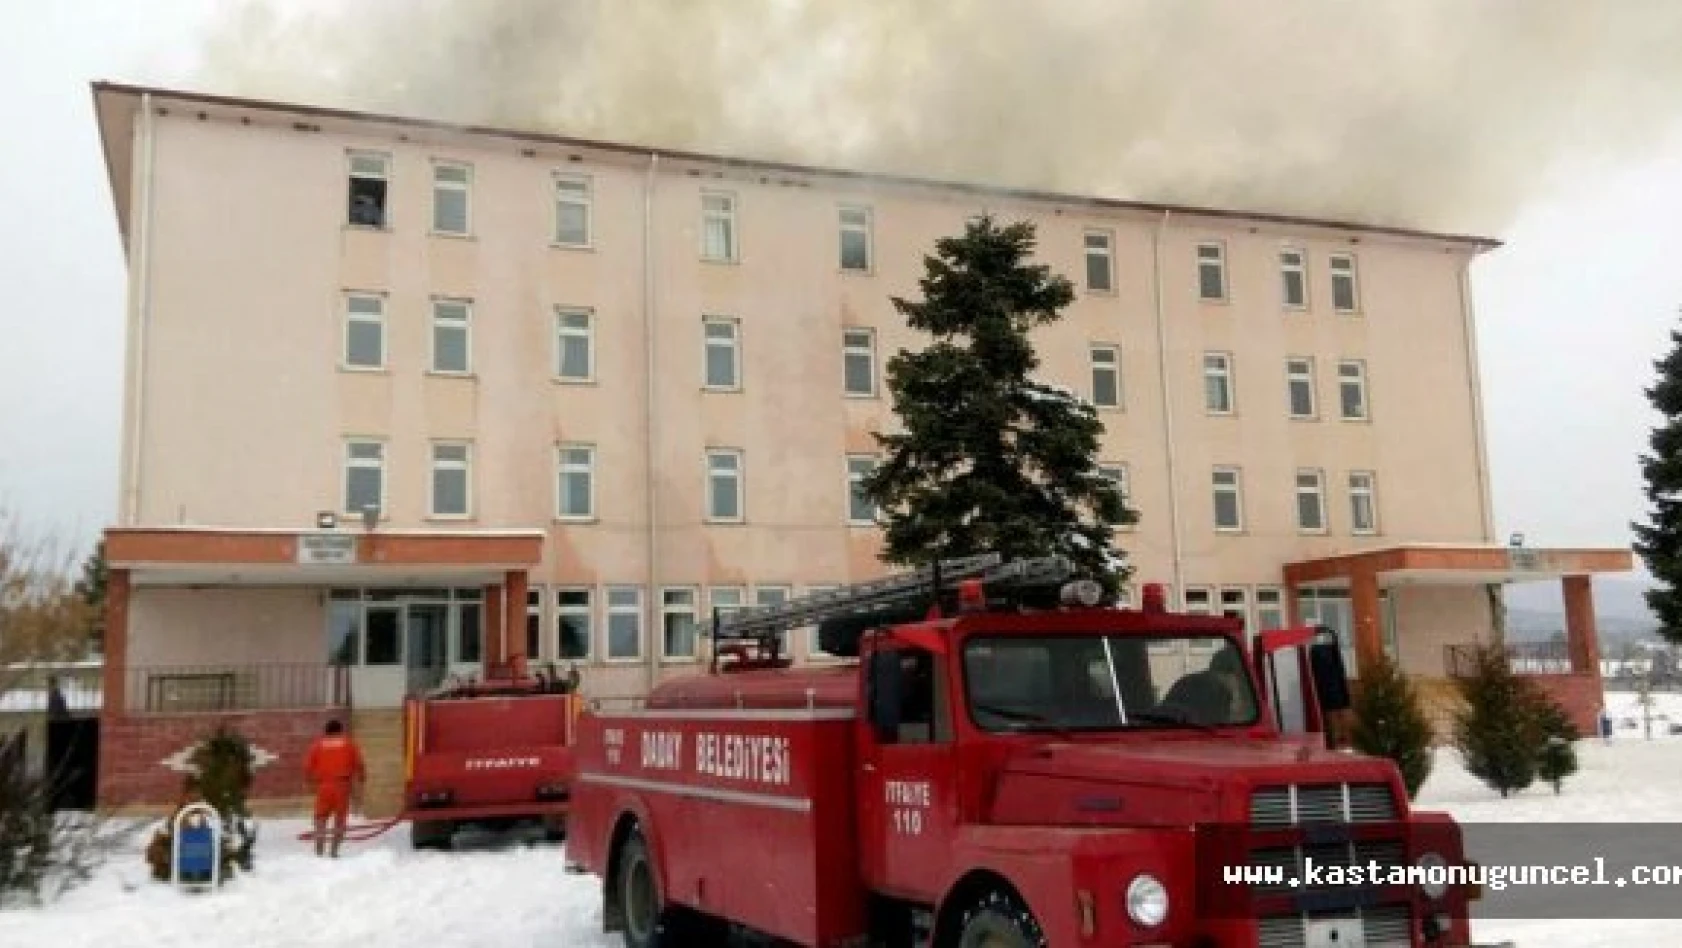 Kastamonu'da okul çatısında yangın çıktı